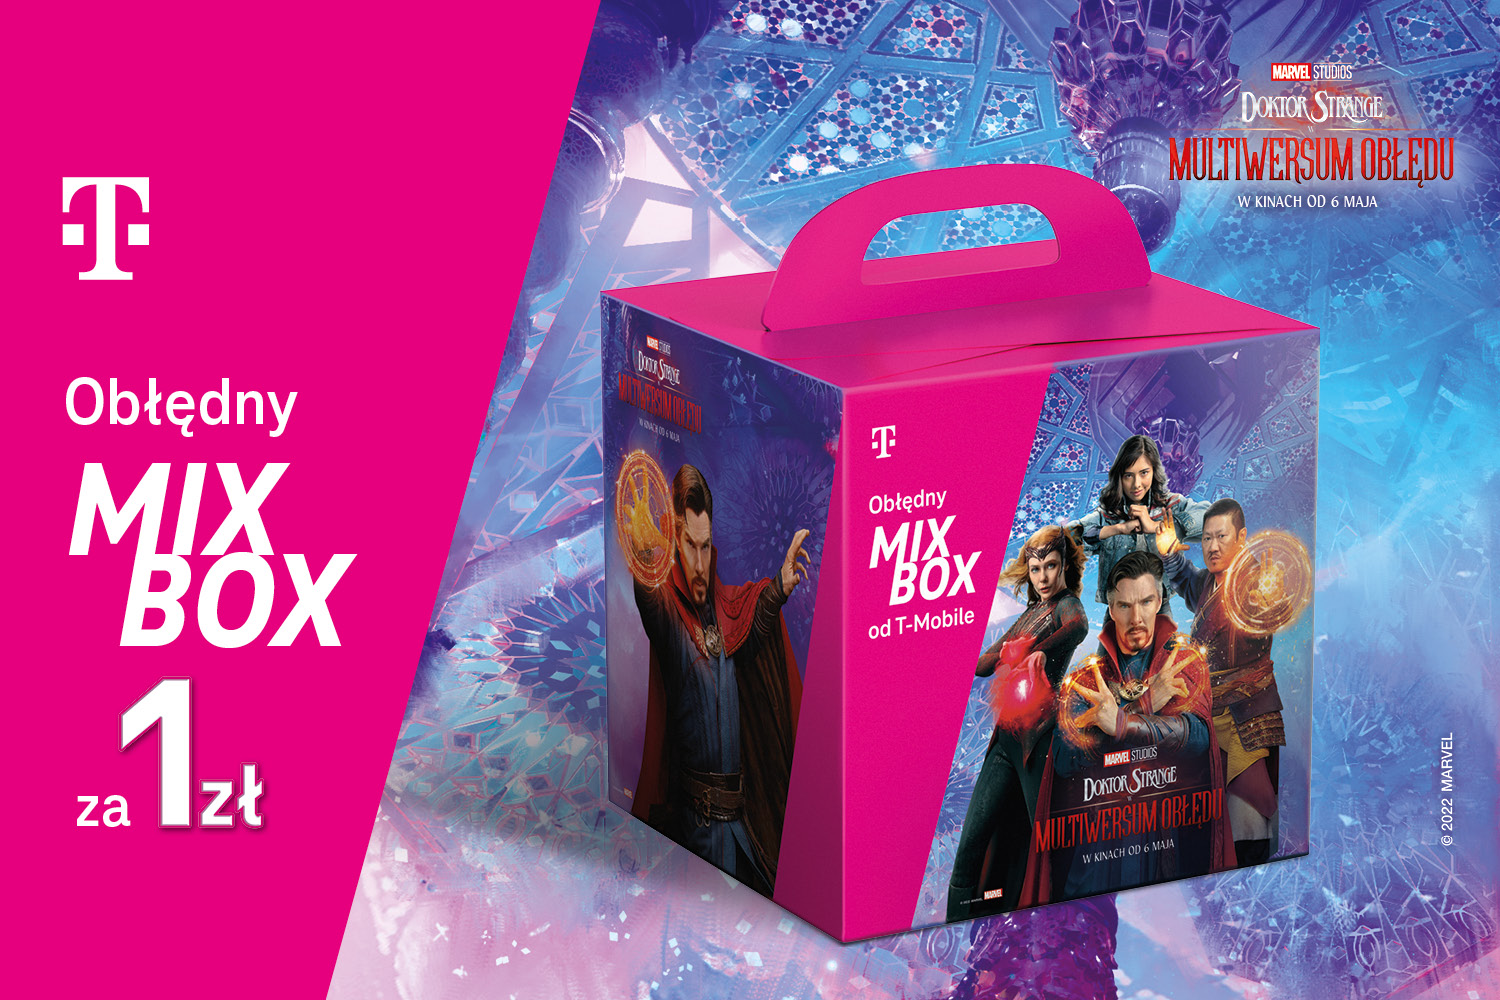 Idealny prezent dla dziecka – Obłędny MIX BOX od T-Mobile inspirowany filmem Marvel Studios „Doktor Strange w multiwersum obłędu”